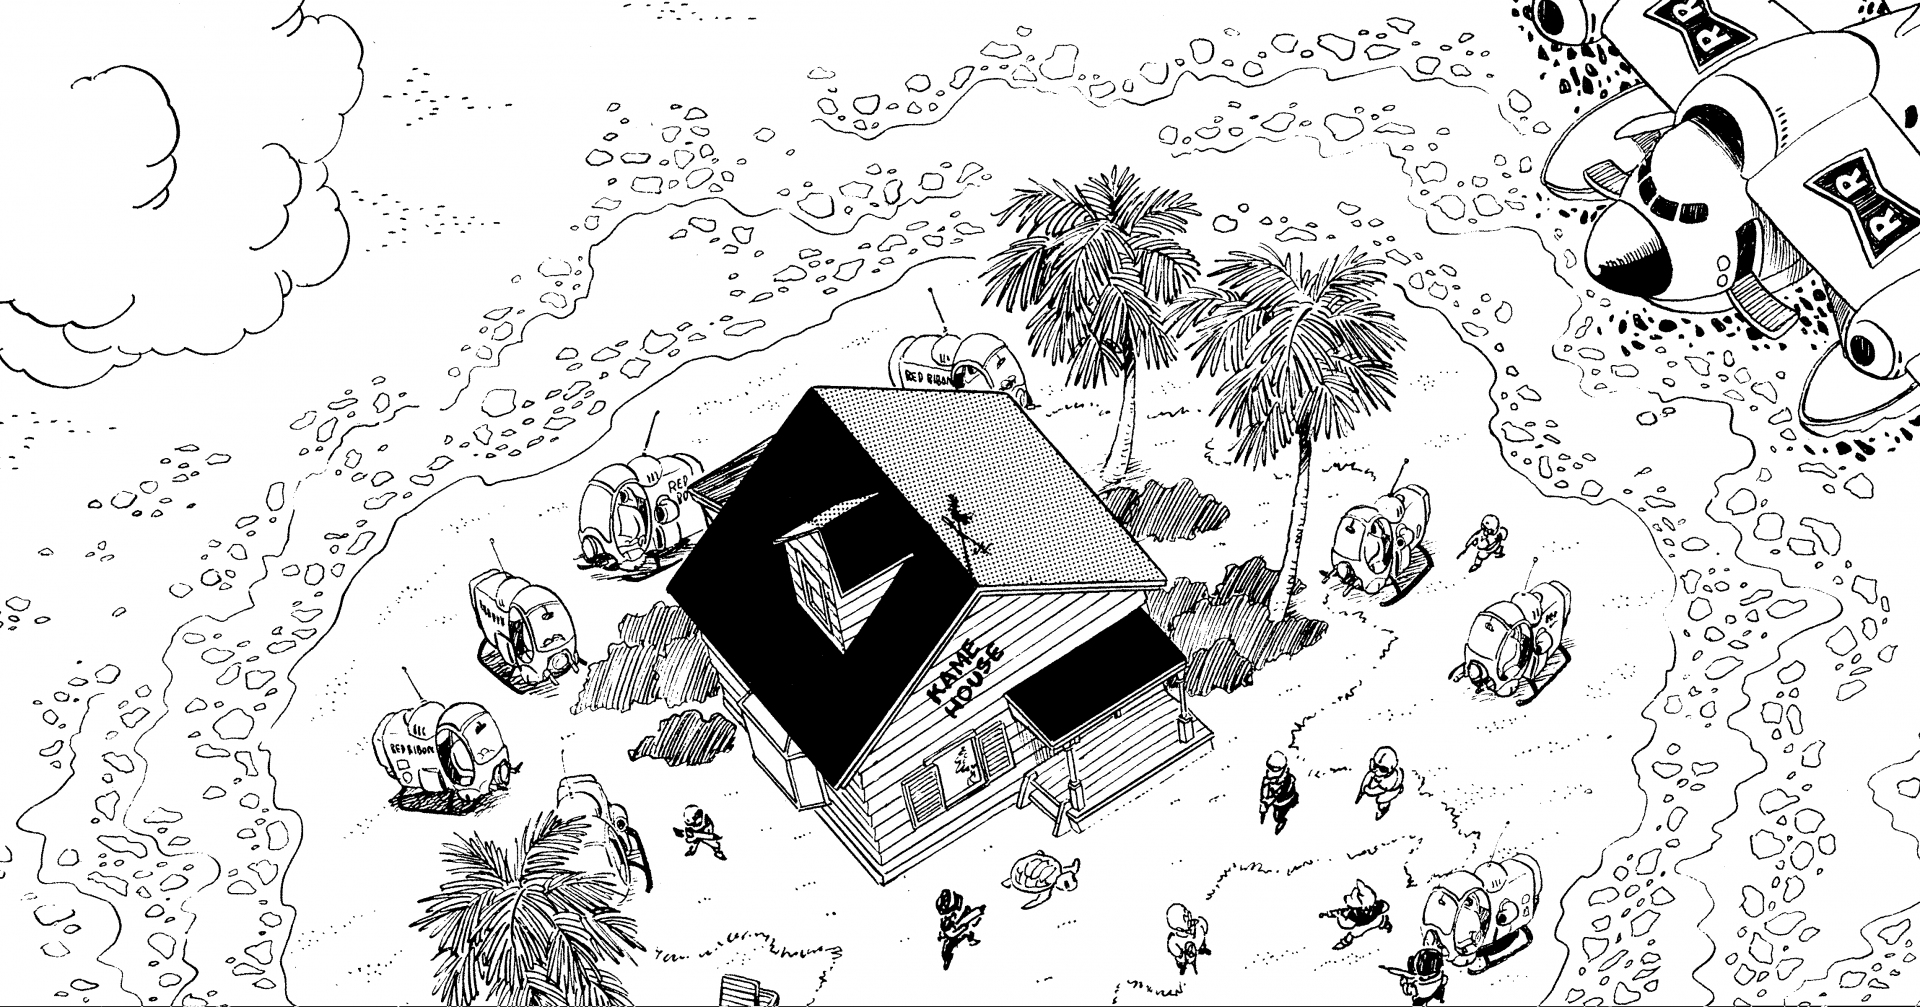 〜 Enquête approfondie sur les origines de Dragon Ball: Fichier #018〜 Récit de voyage mondial : Zone de Kame House